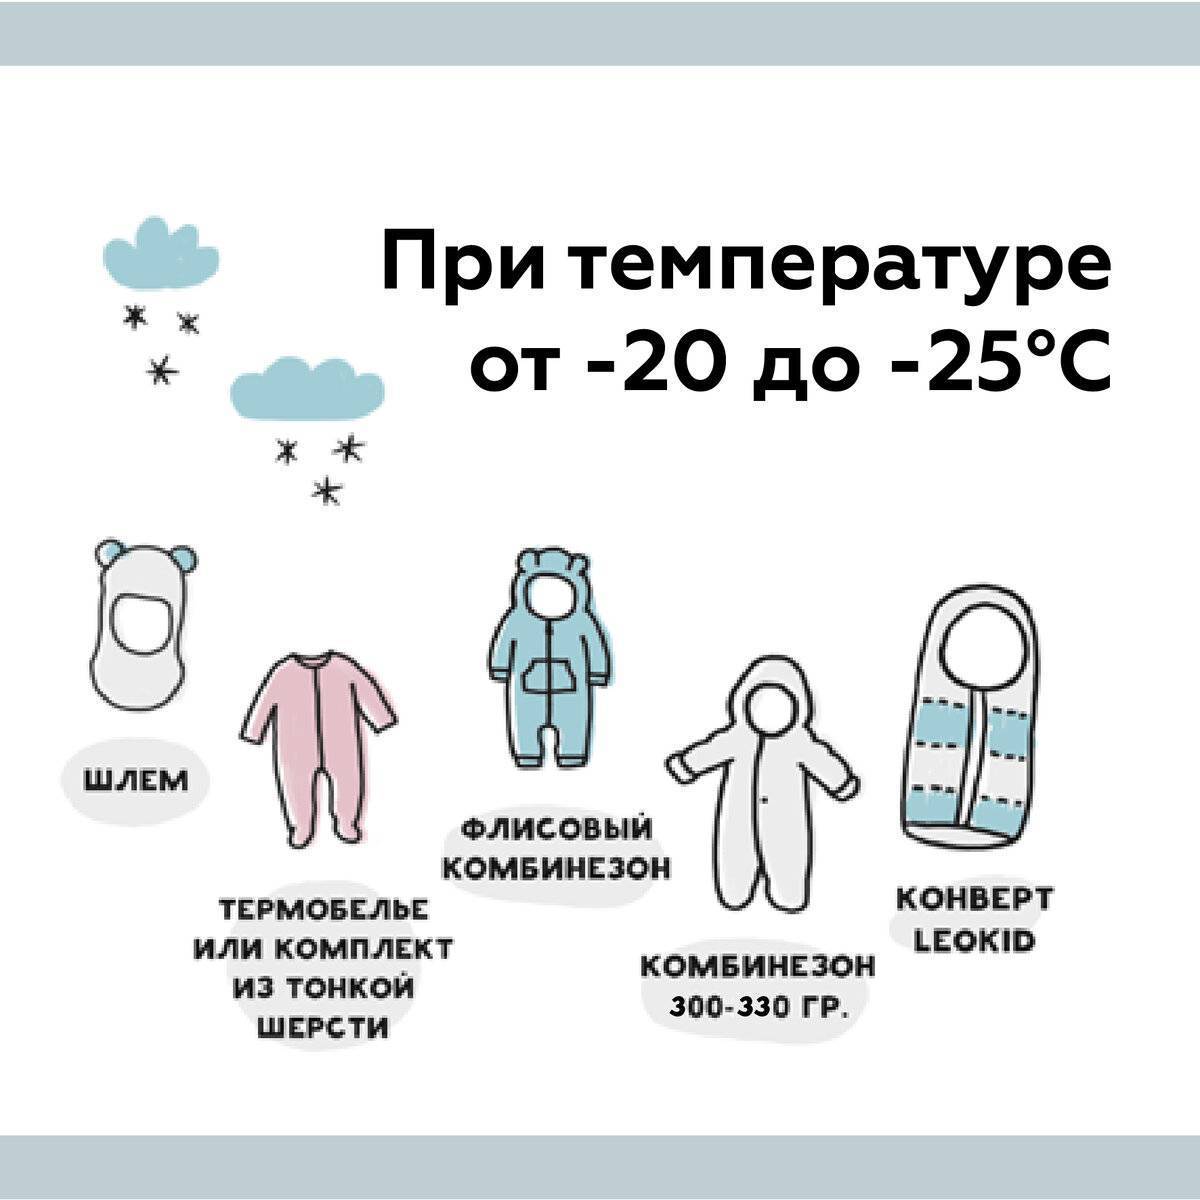 Как одевать новорожденного зимой дома?